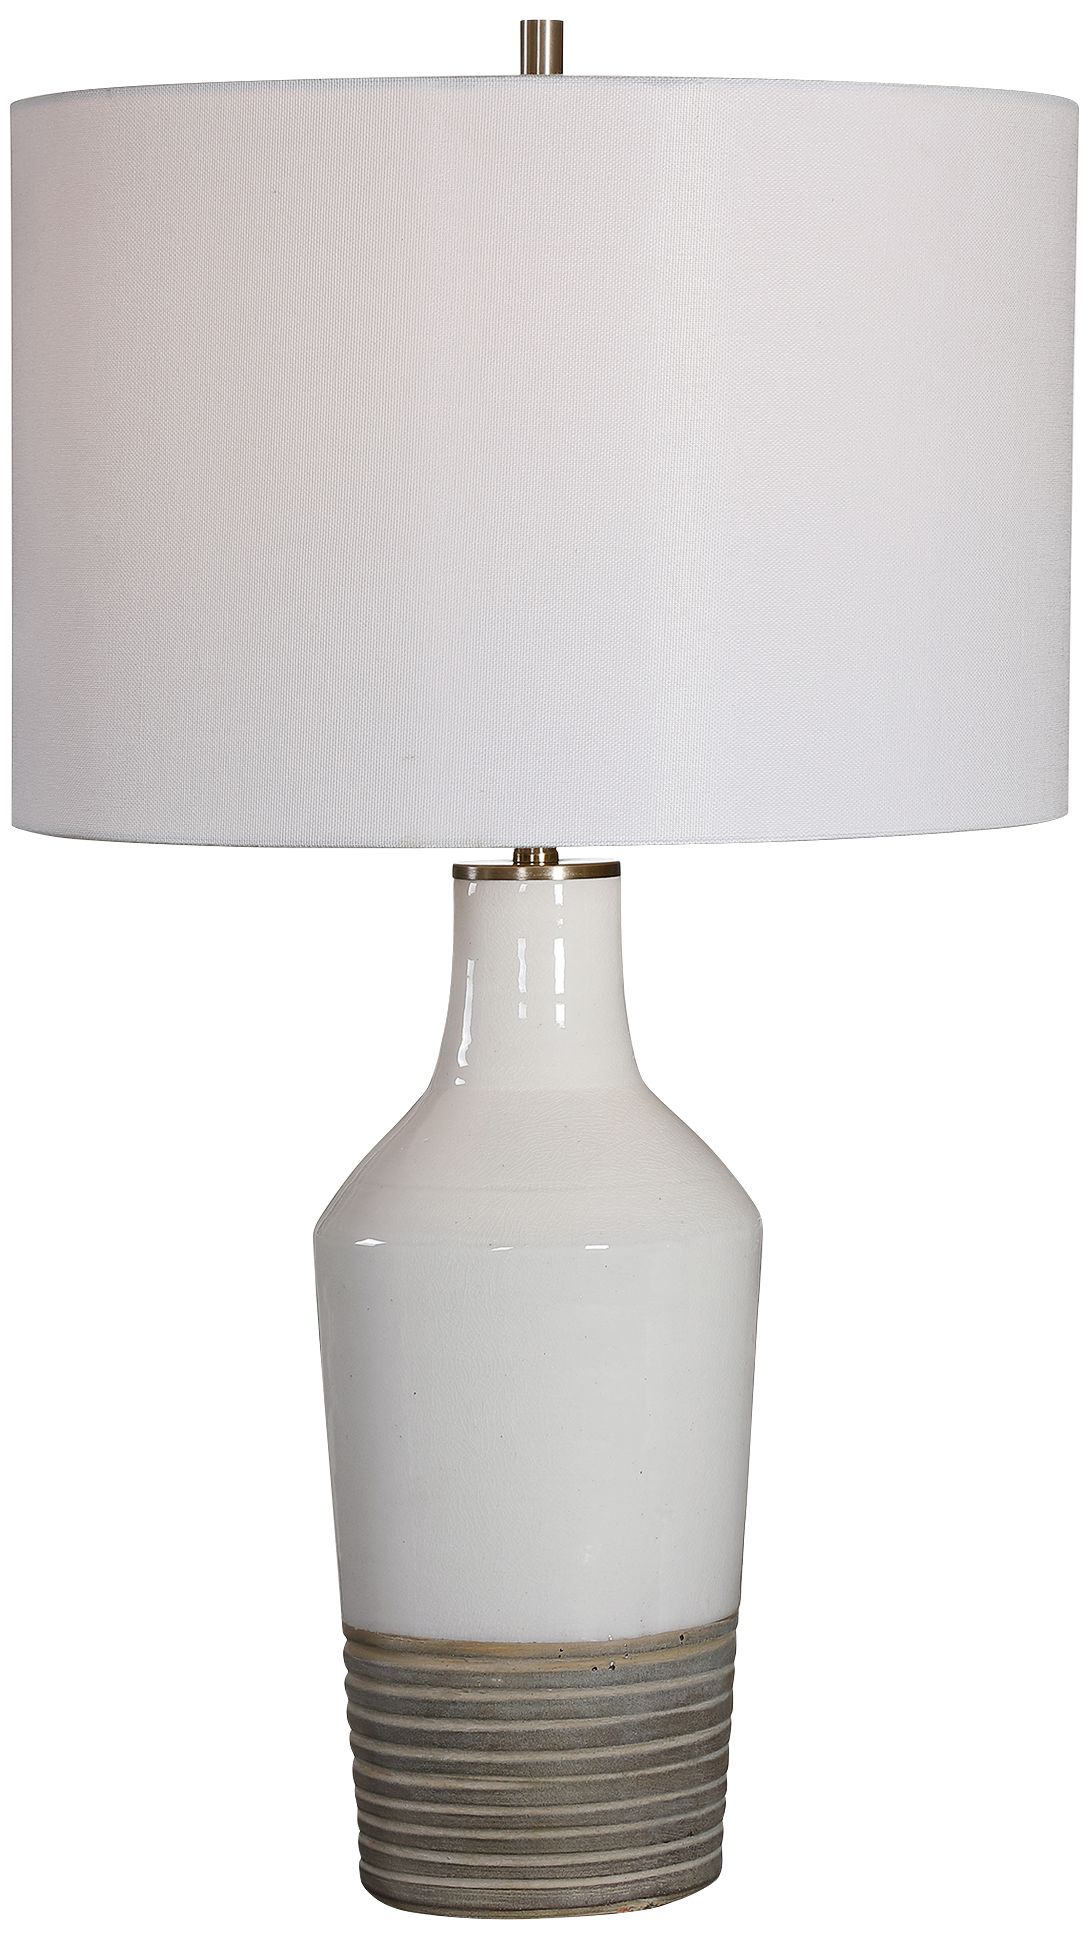 Uttermost Dakota White Crackle Glaze Ceramic Table Lamp - #87N19